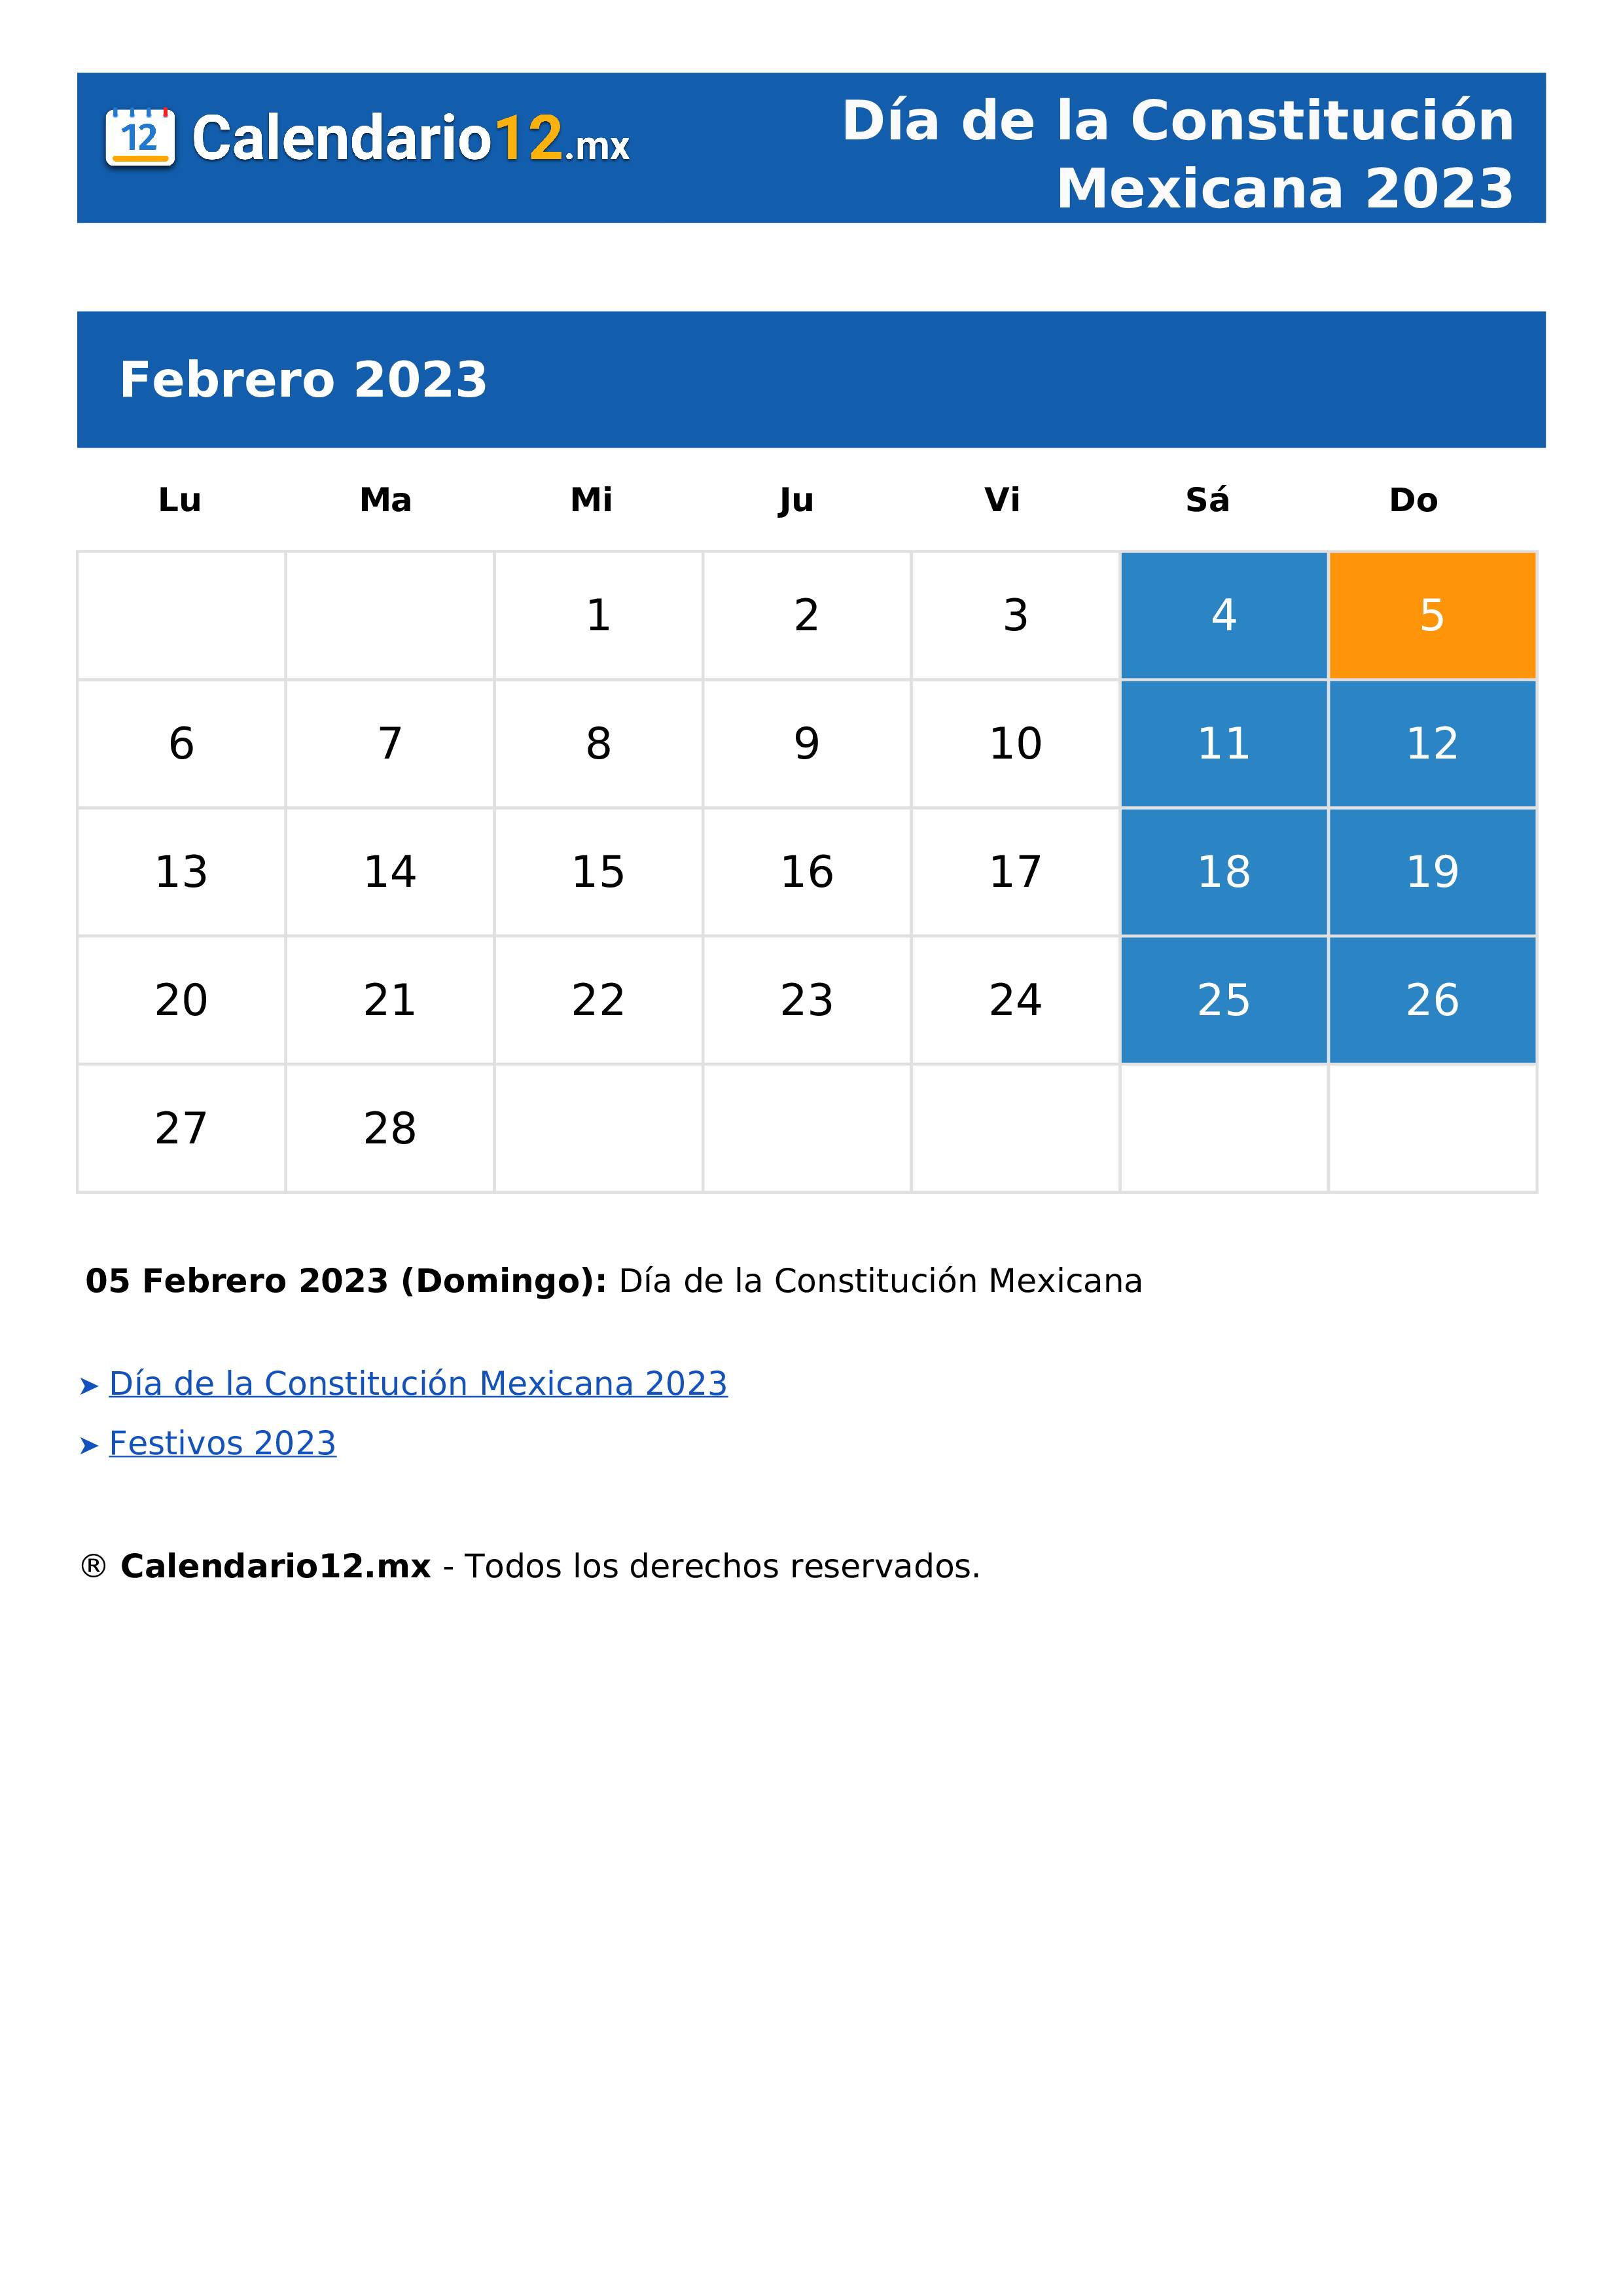 Día de la Constitución Mexicana 2023